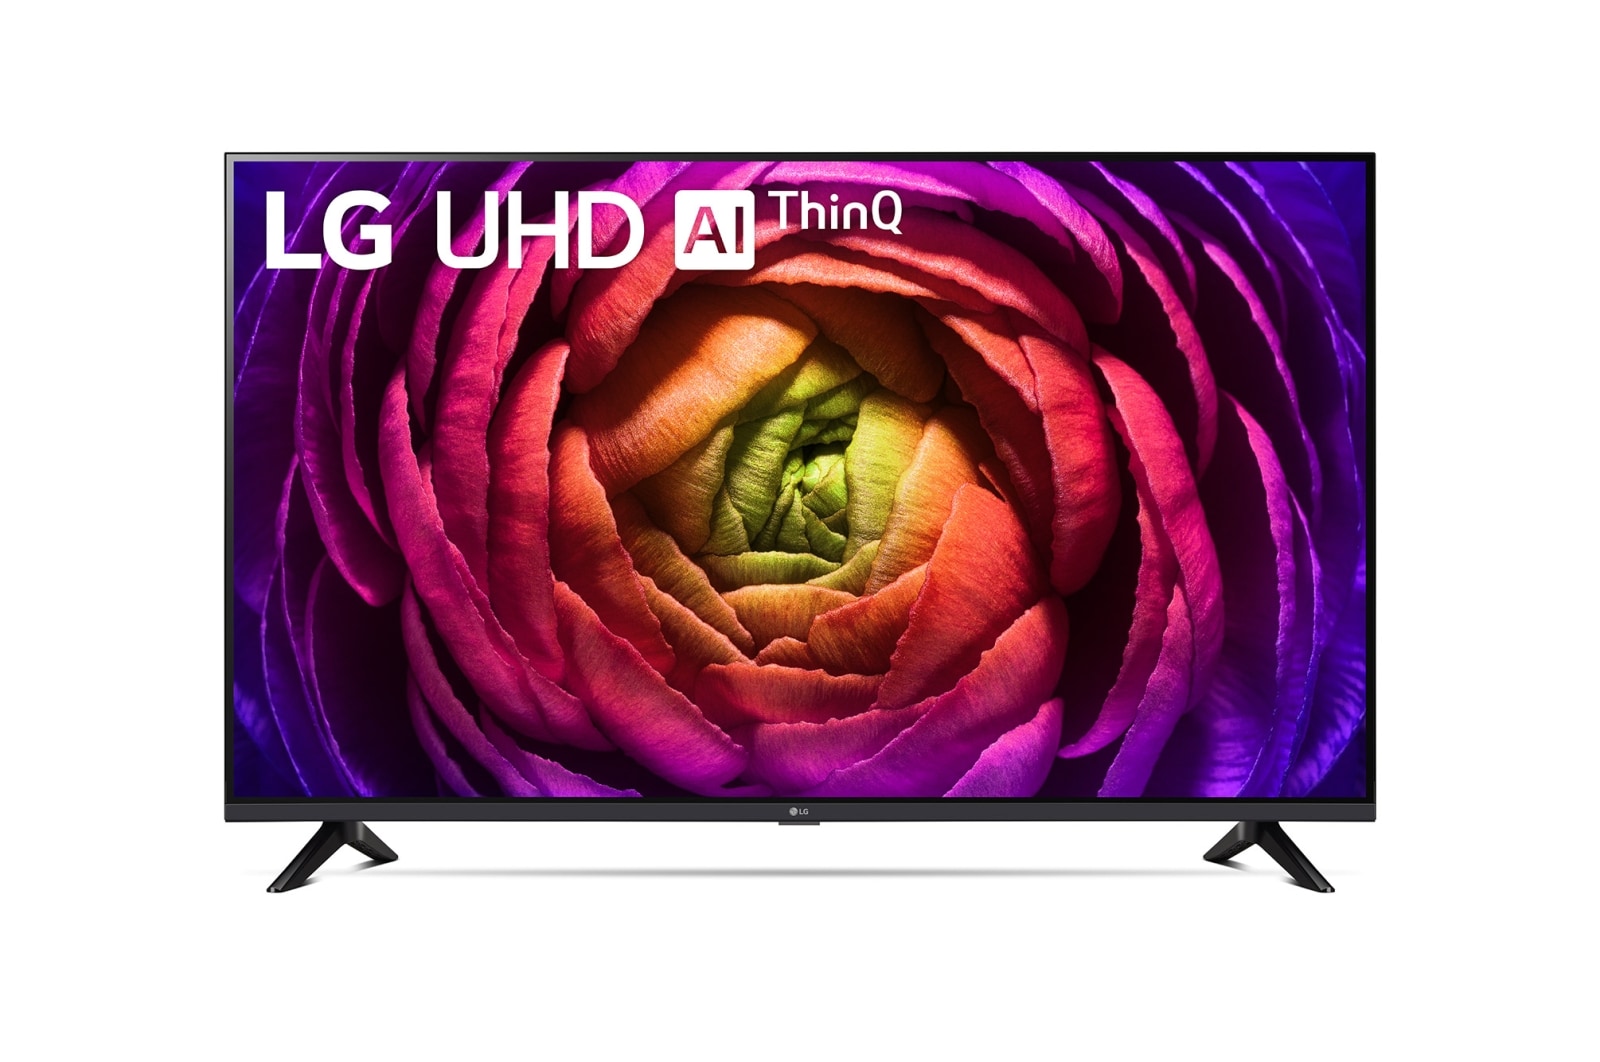 LG 65 Zoll LG 4K Smart UHD TV UR73, 65UR73006LA